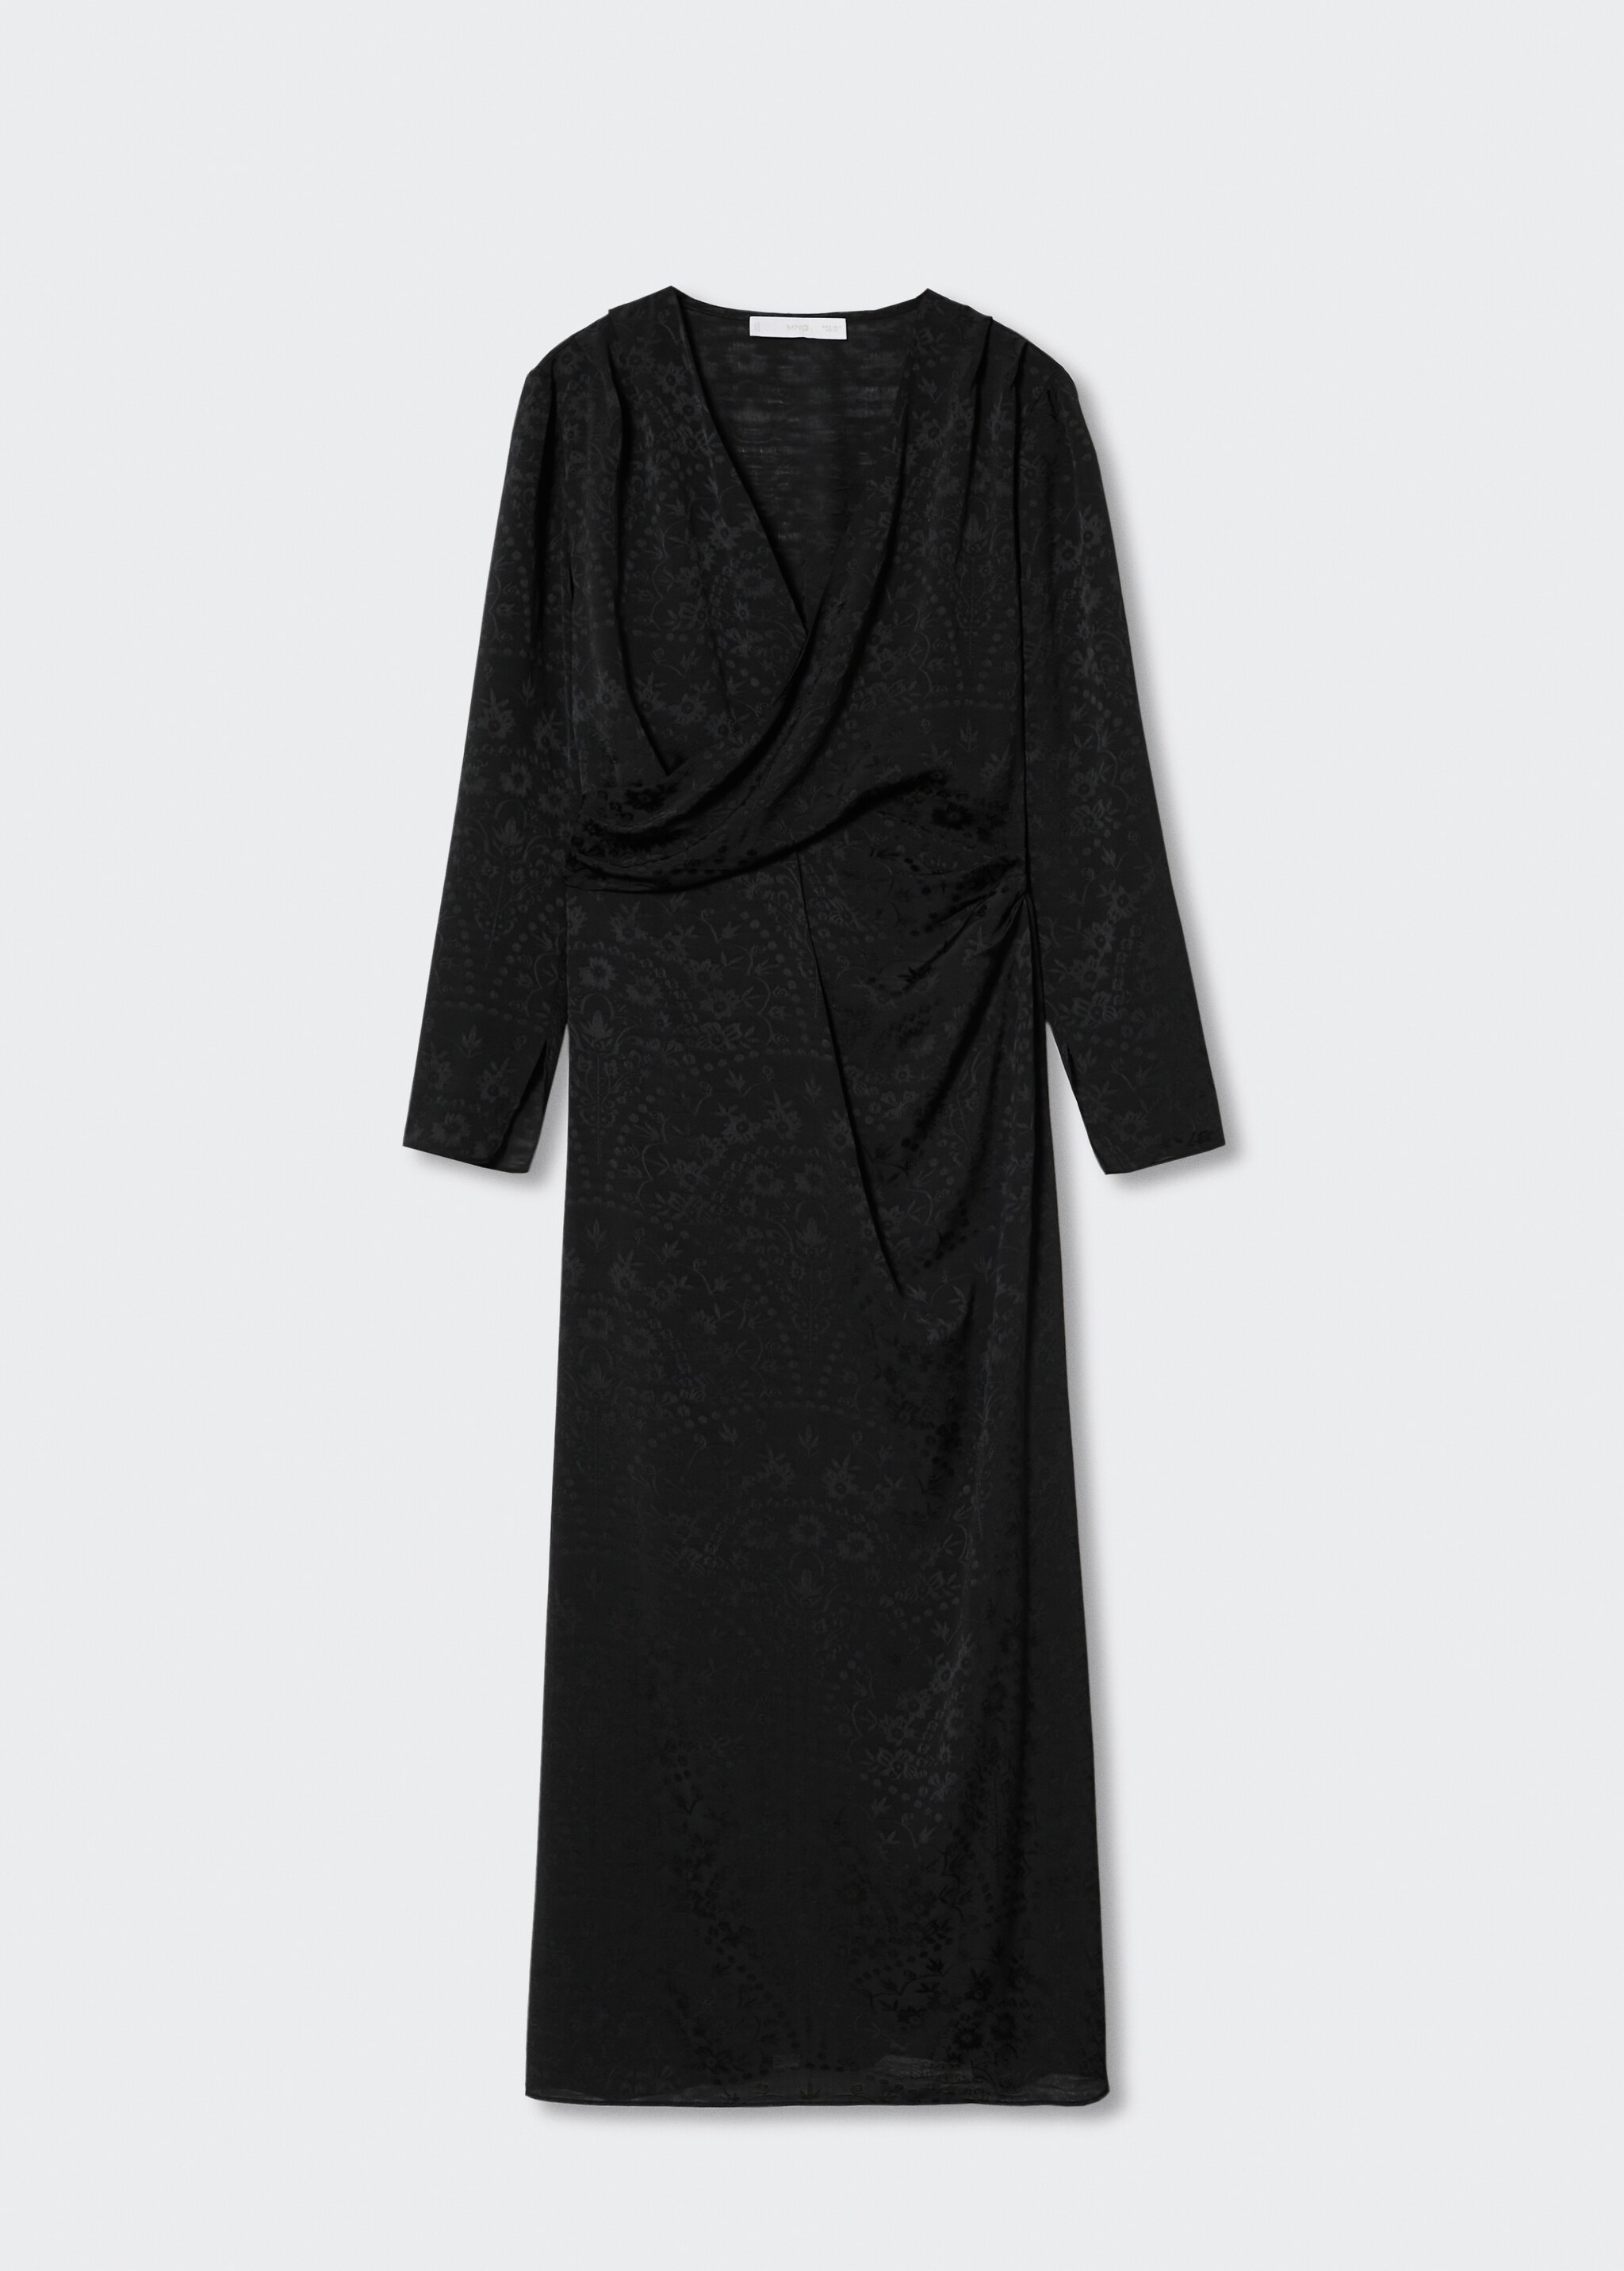 Black satin dress - Articol fără model